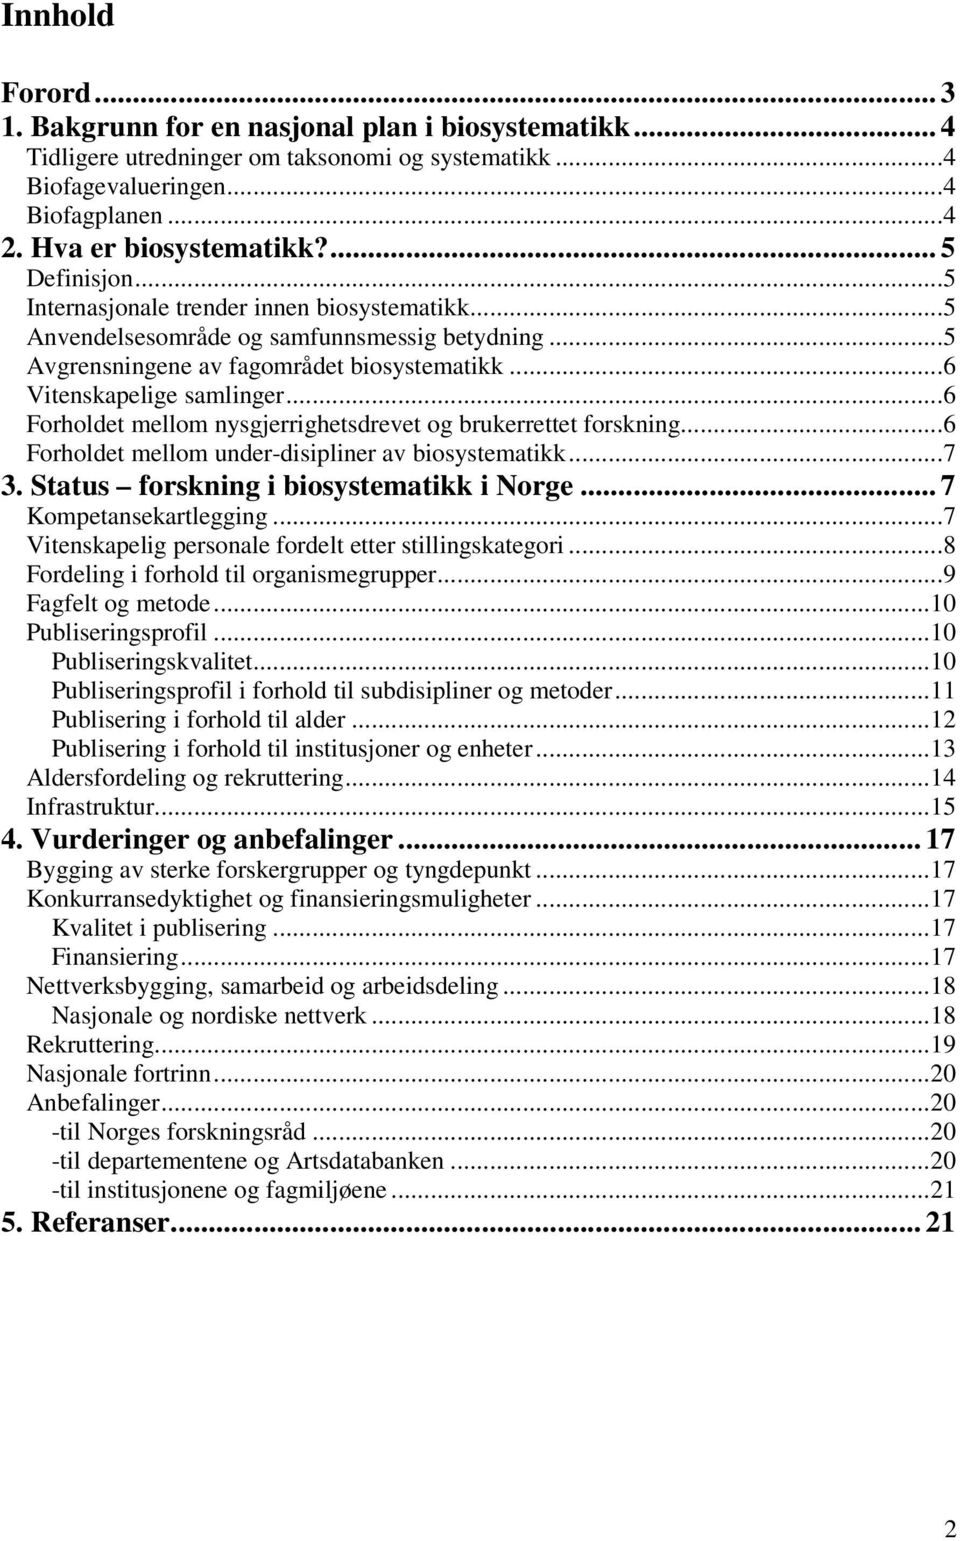 ..6 Forholdet mellom nysgjerrighetsdrevet og brukerrettet forskning...6 Forholdet mellom under-disipliner av biosystematikk...7 3. Status forskning i biosystematikk i Norge... 7 Kompetansekartlegging.